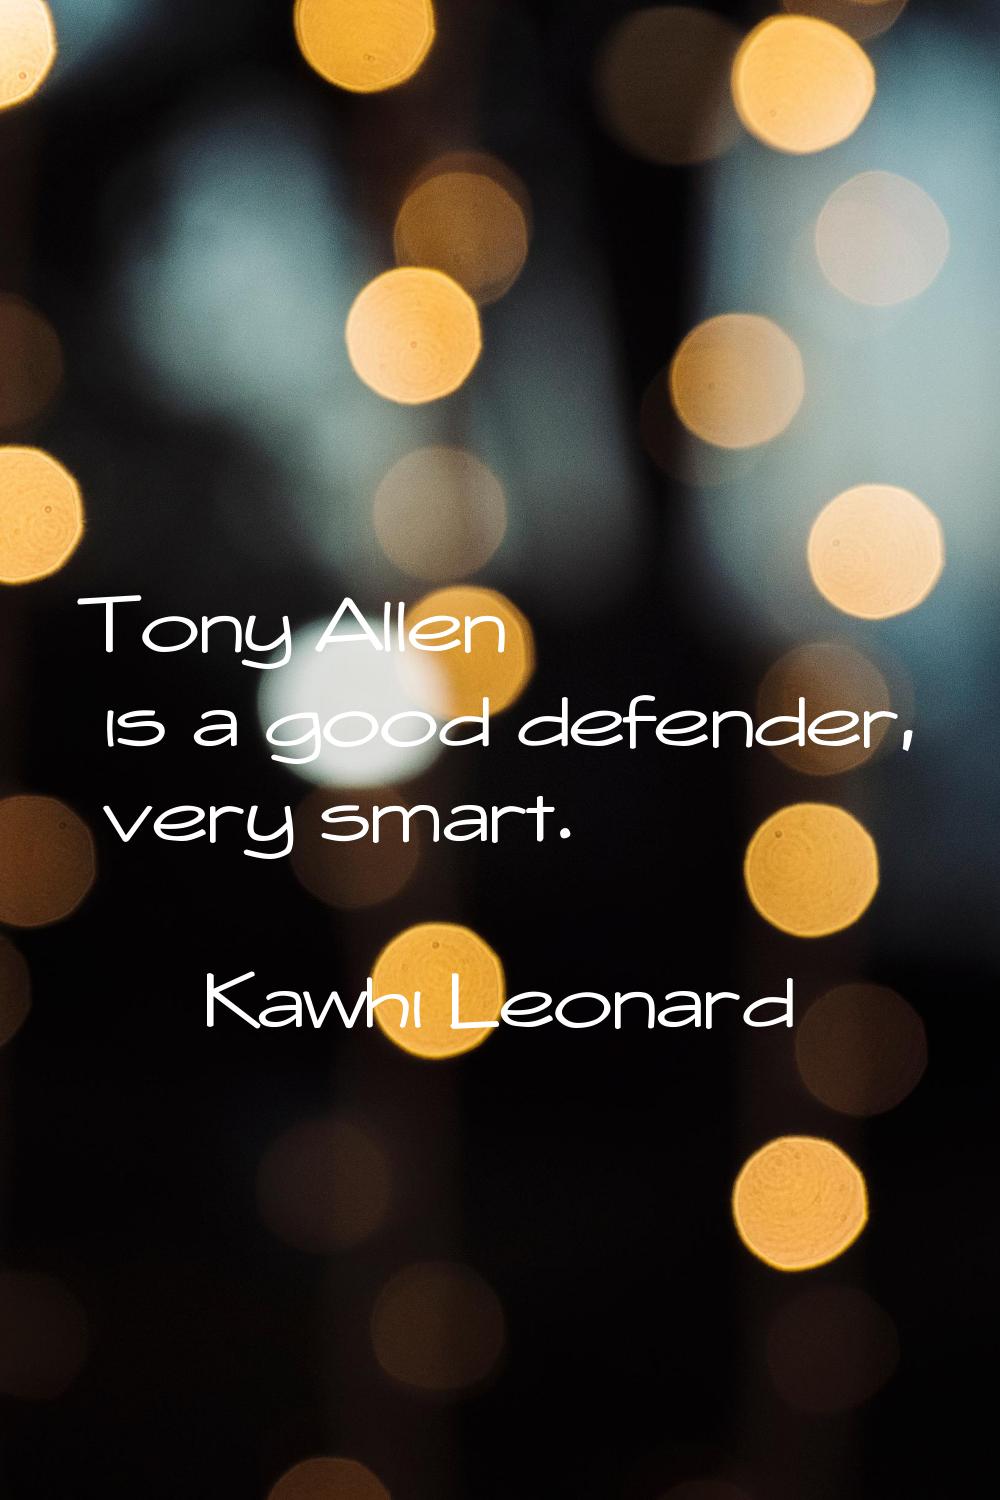 Tony Allen is a good defender, very smart.